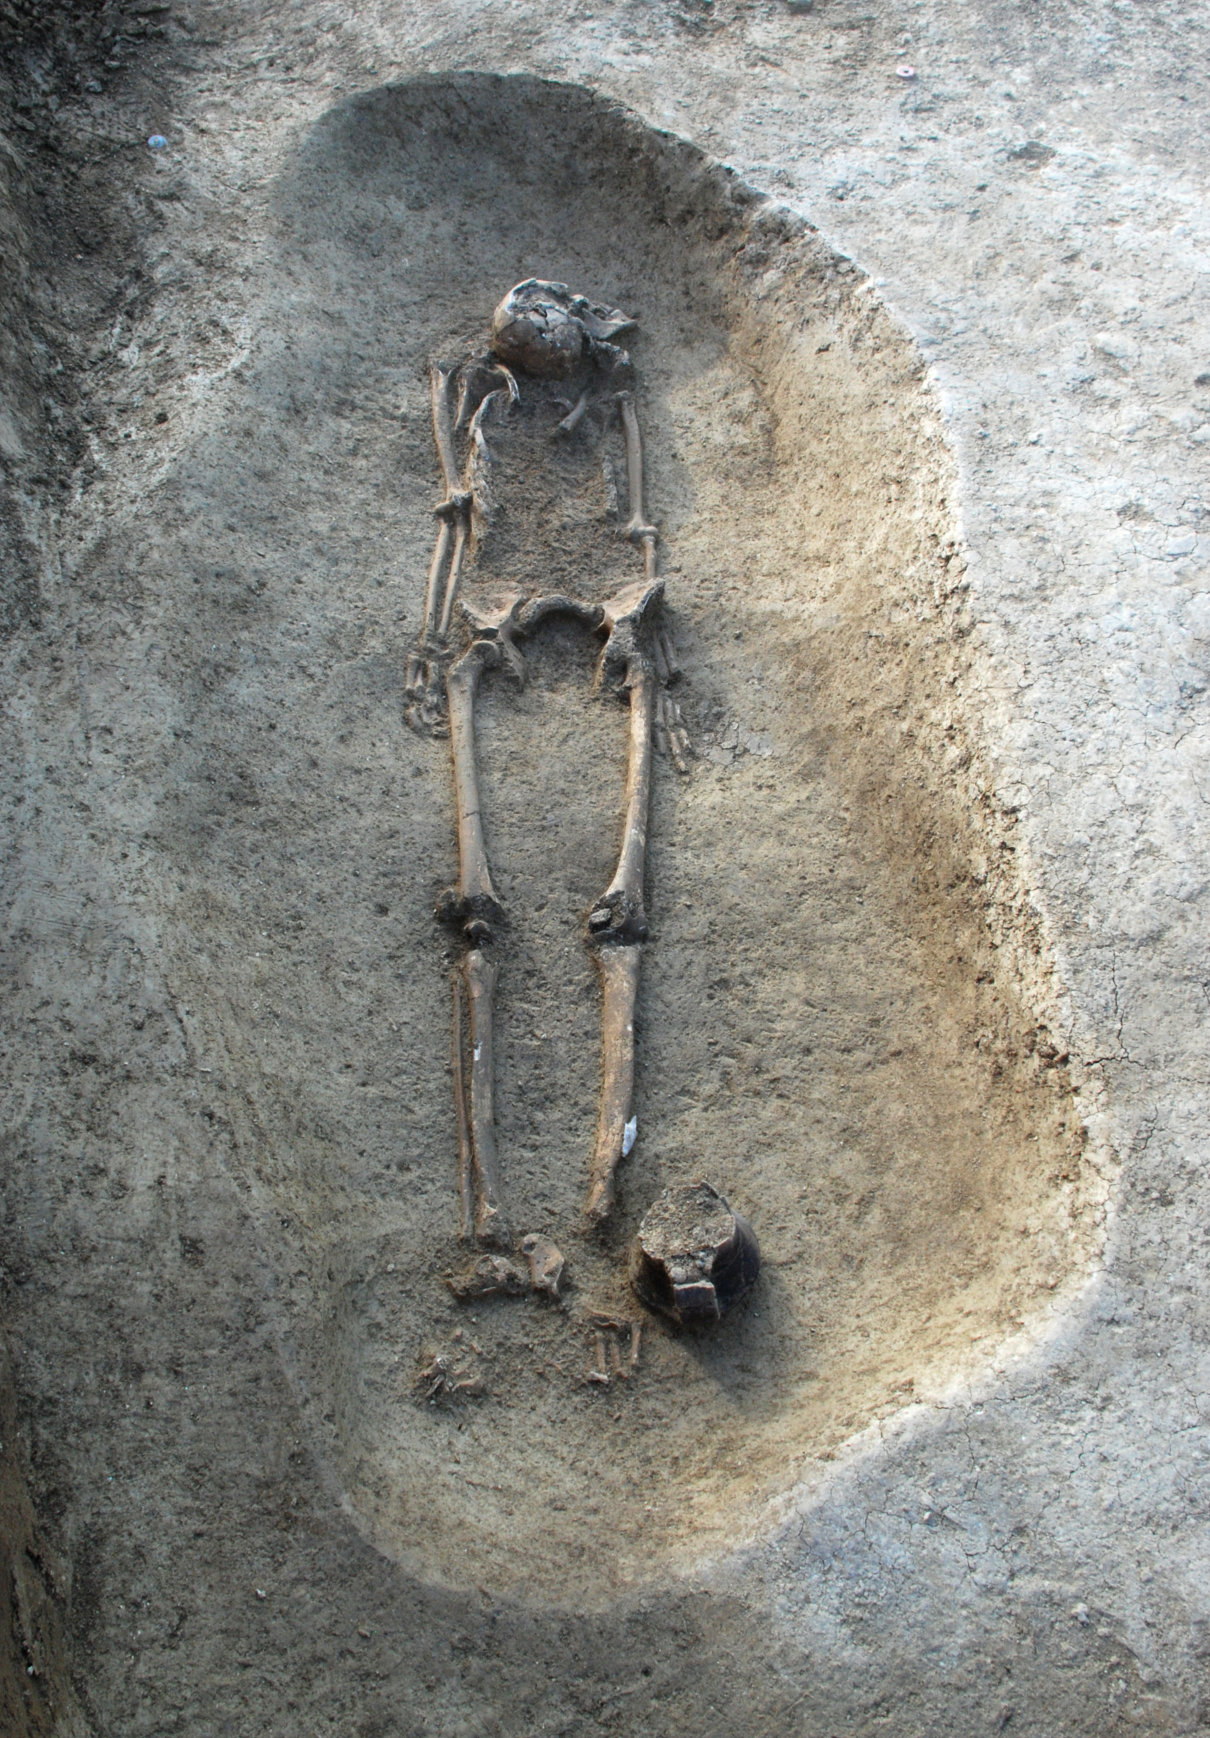 Forl, necropoli di via Celletta dei Passeri - Tomba a inumazione con il recipiente ceramico di corredo deposto ai piedi del defunto